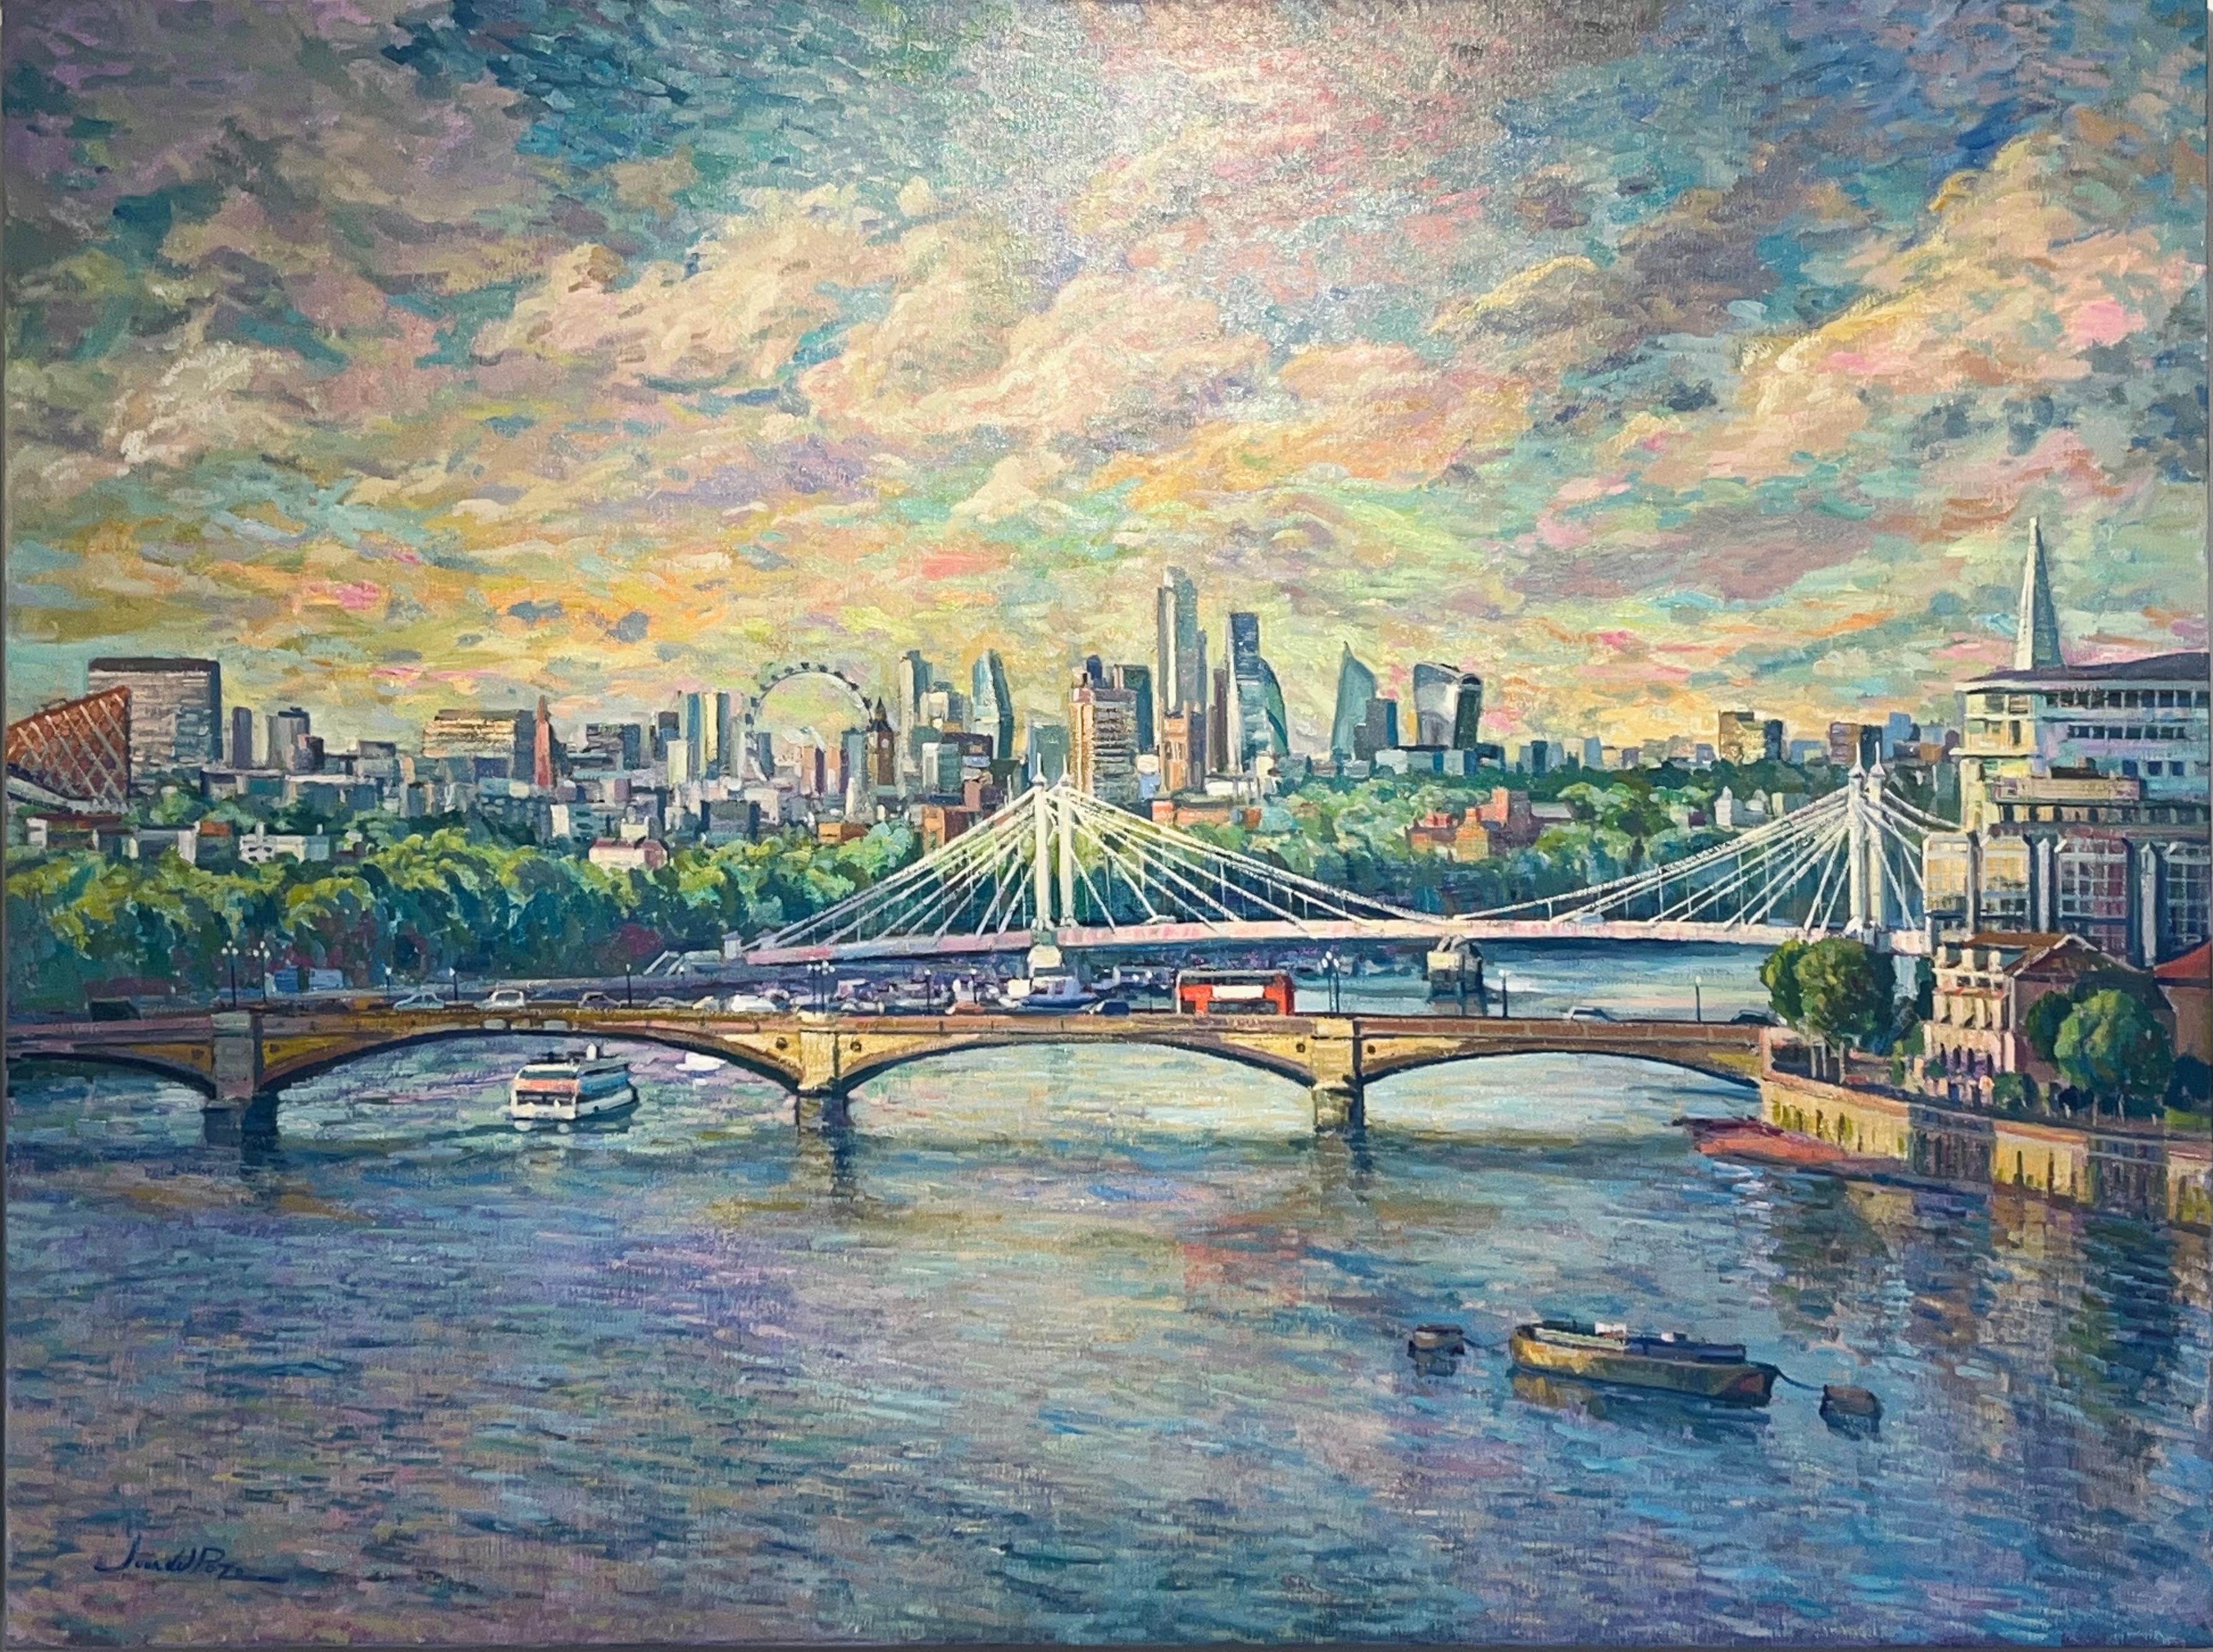 Juan del Pozo Landscape Painting - London Bridges -original impressionism cityscape oil painting-contemporary Art